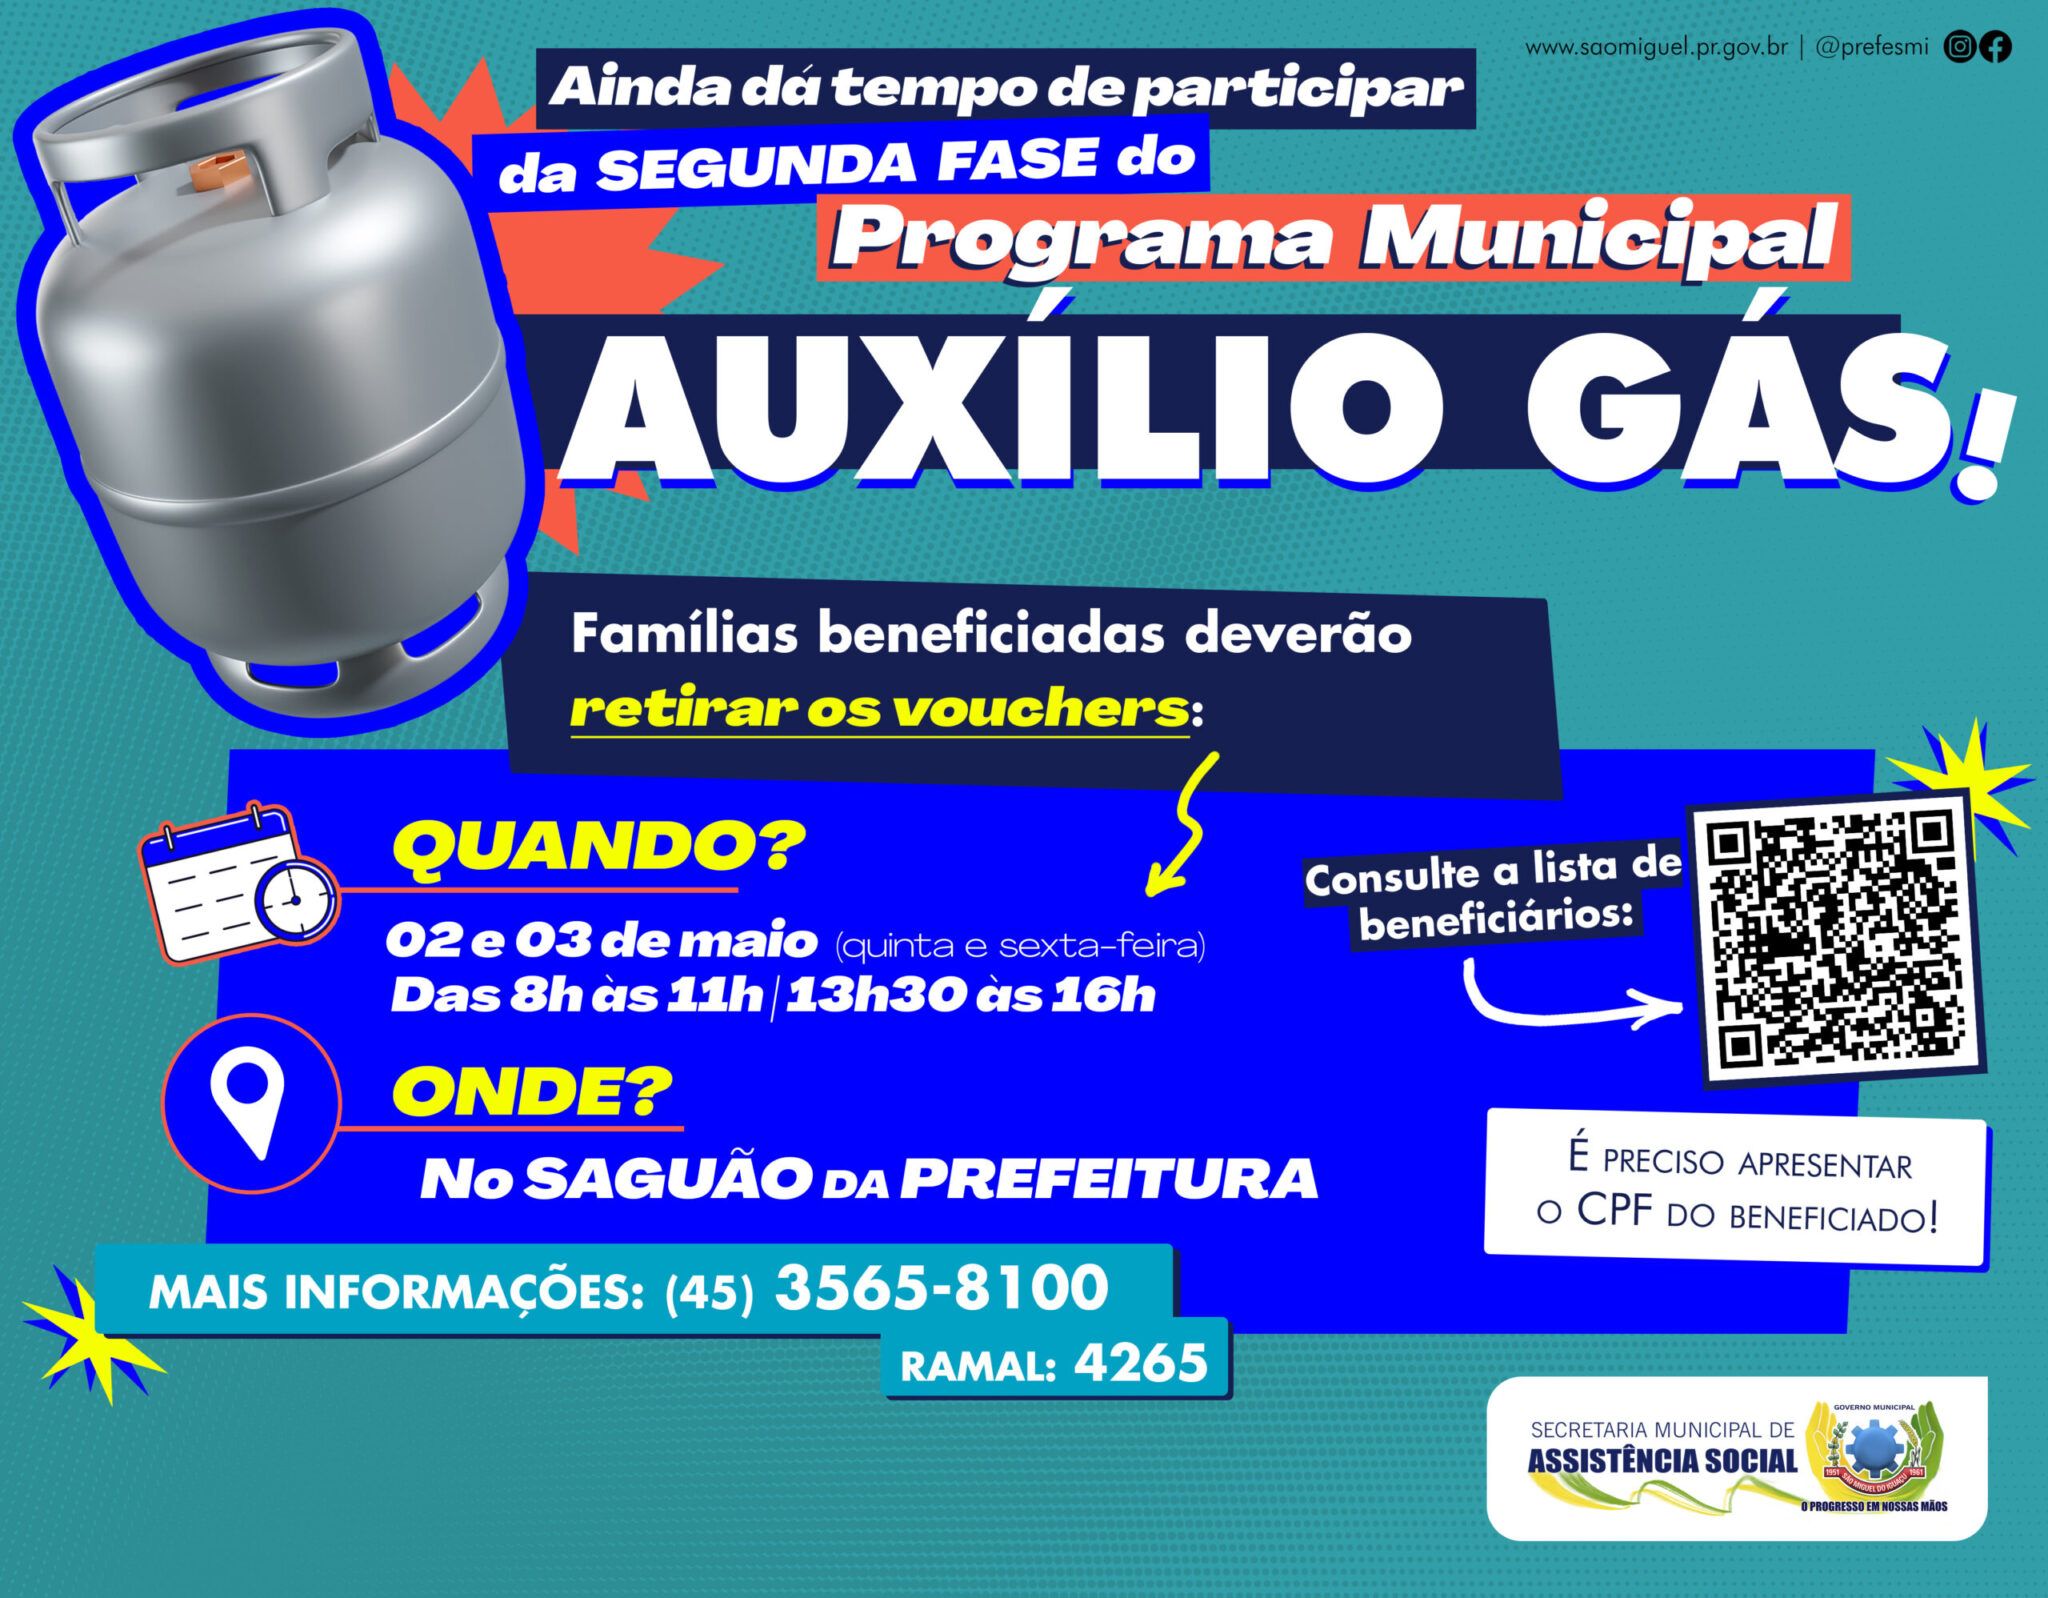 🔥 Novas oportunidades: entrega de vouchers remanescentes do Programa Municipal ‘Auxílio Gás’ em São Miguel do Iguaçu!